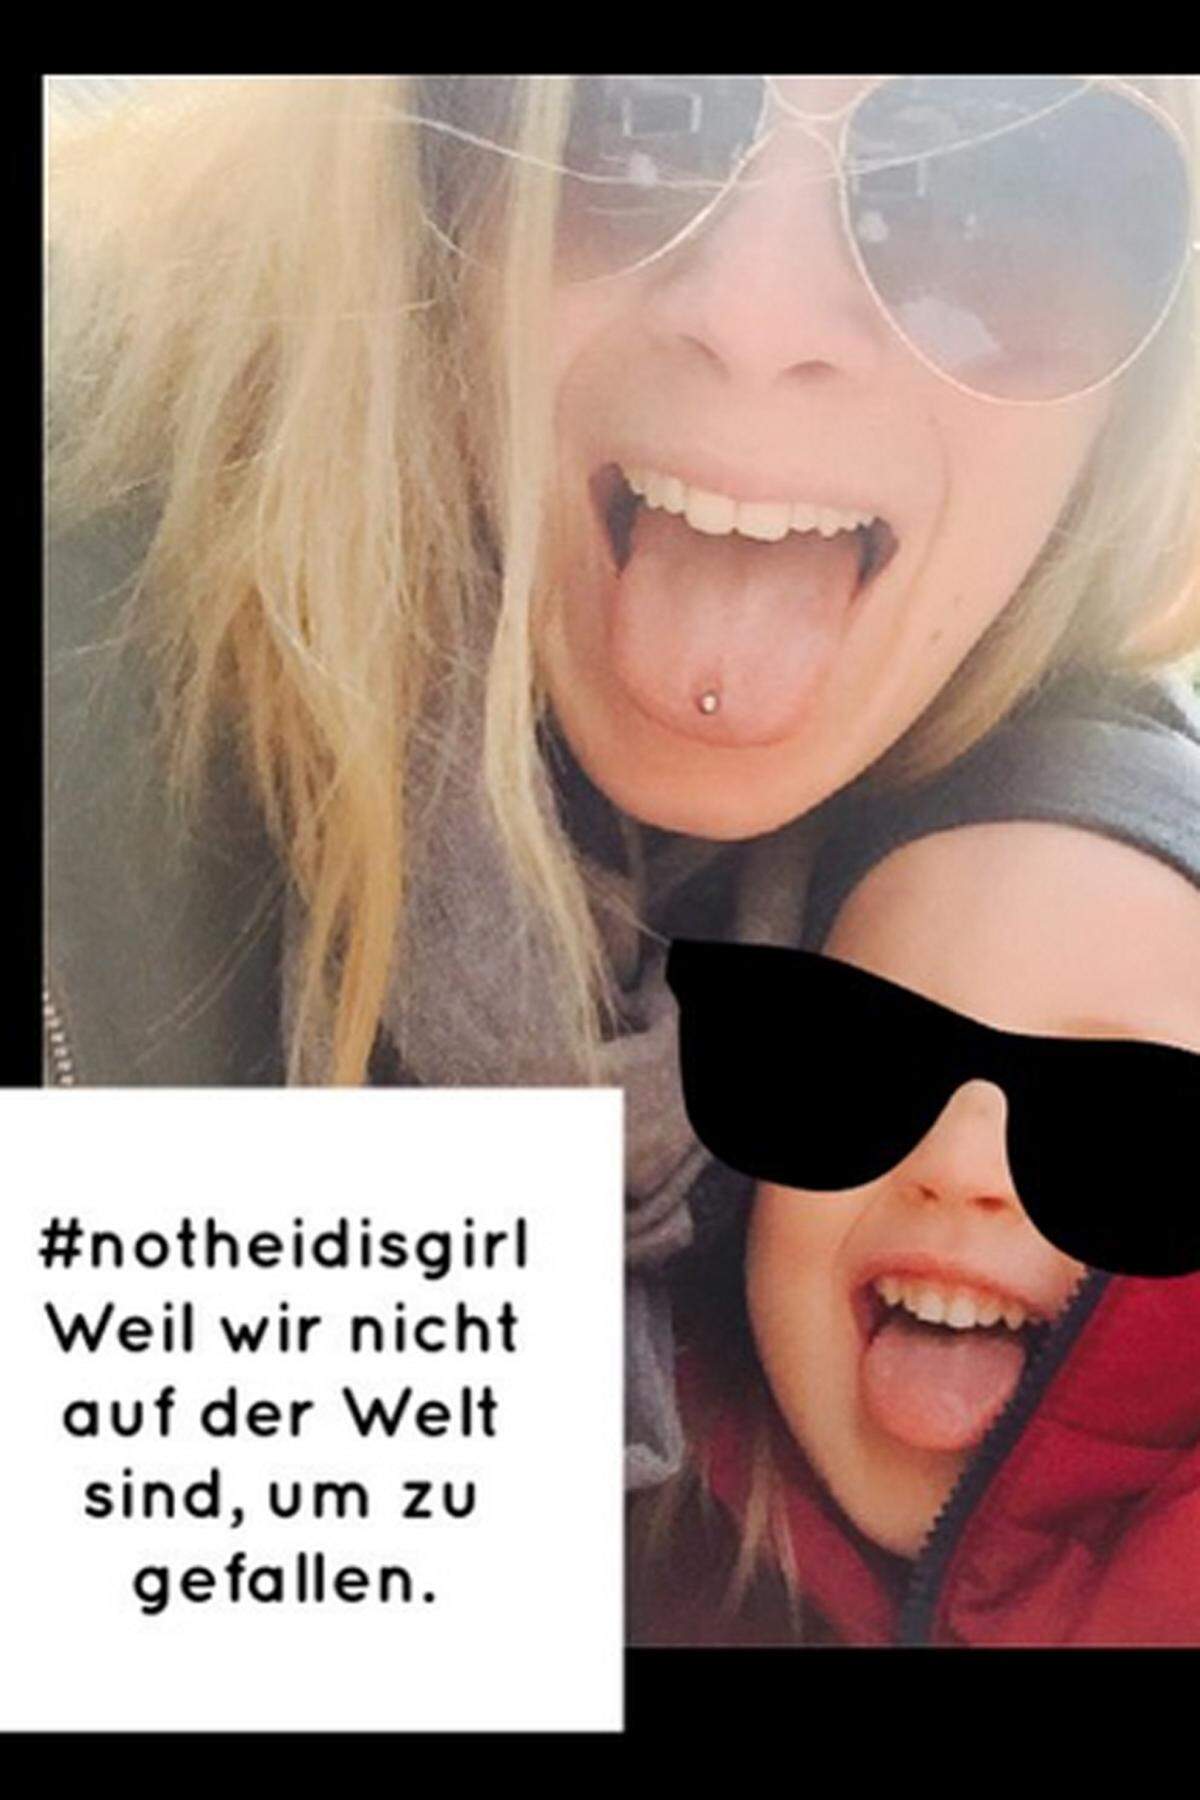 Eine Userin posierte direkt mit ihrem Kind: "Weil wir nicht auf der Welt sind, um zu gefallen", schrieb sie unter ihr Protest-Foto.